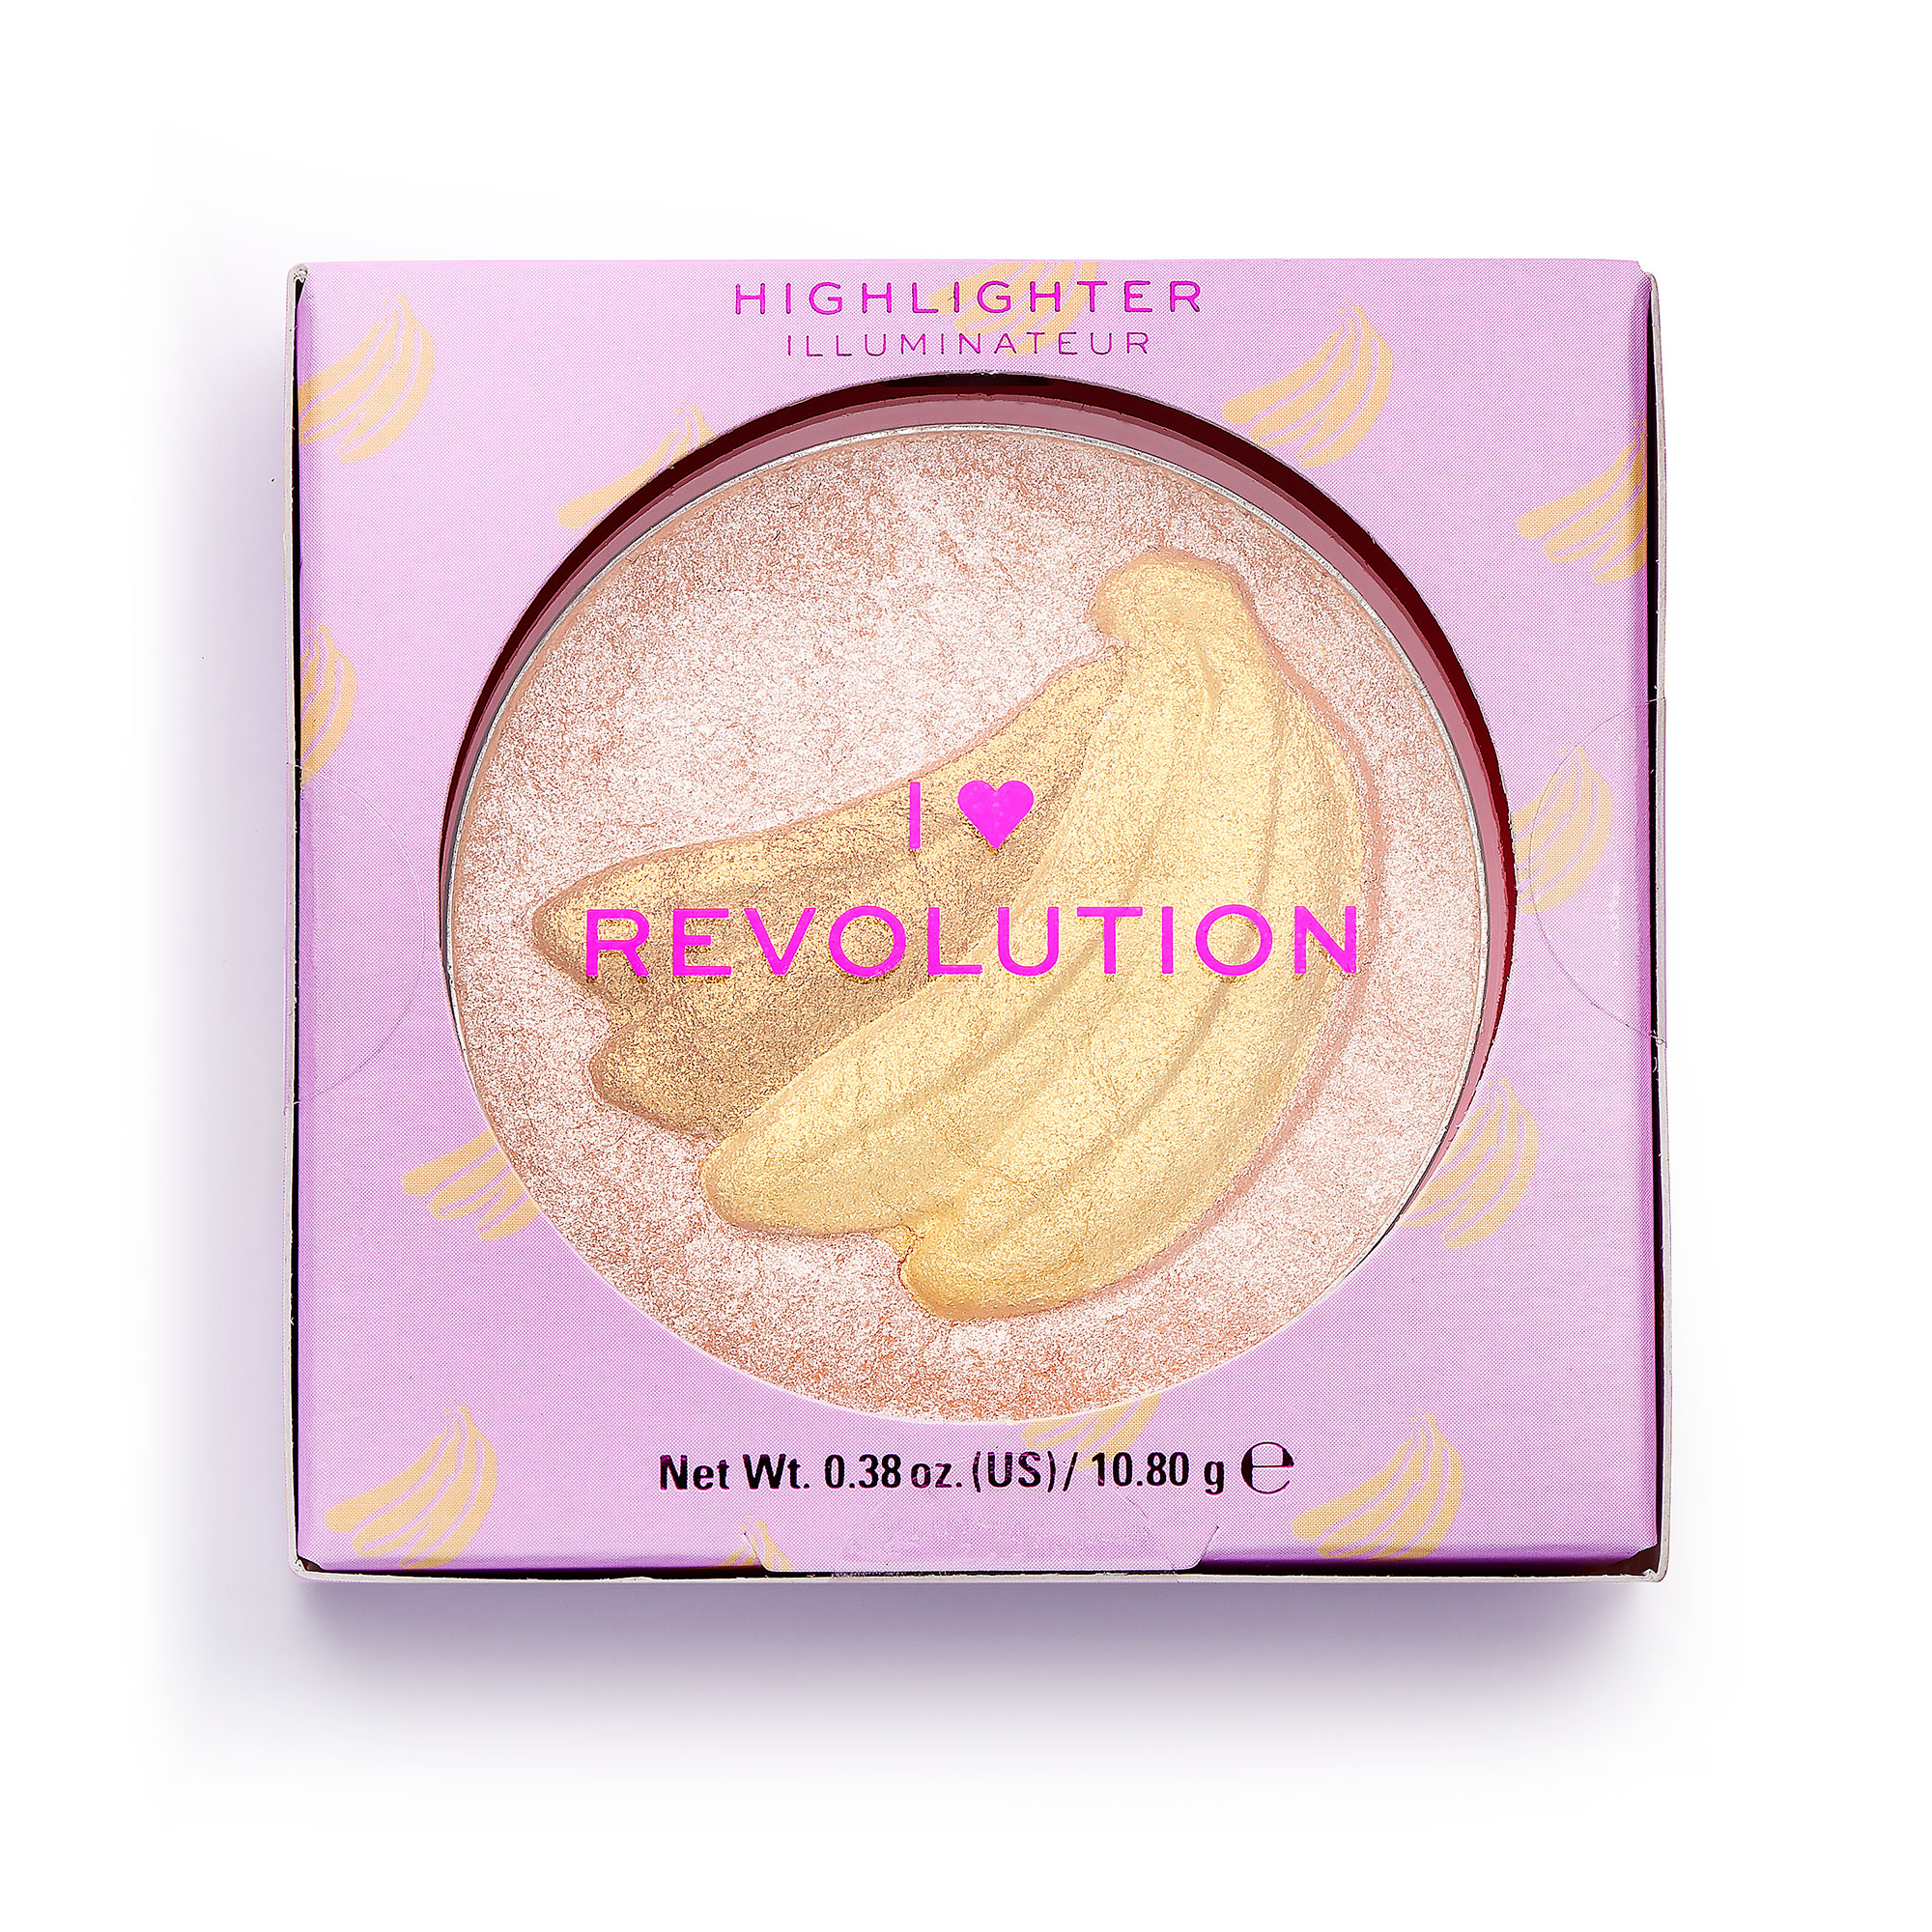 Revolution ve I Heart Revolution Yeni Ürünleriyle Stil Sahibi Makyajlara Damga Vuruyor